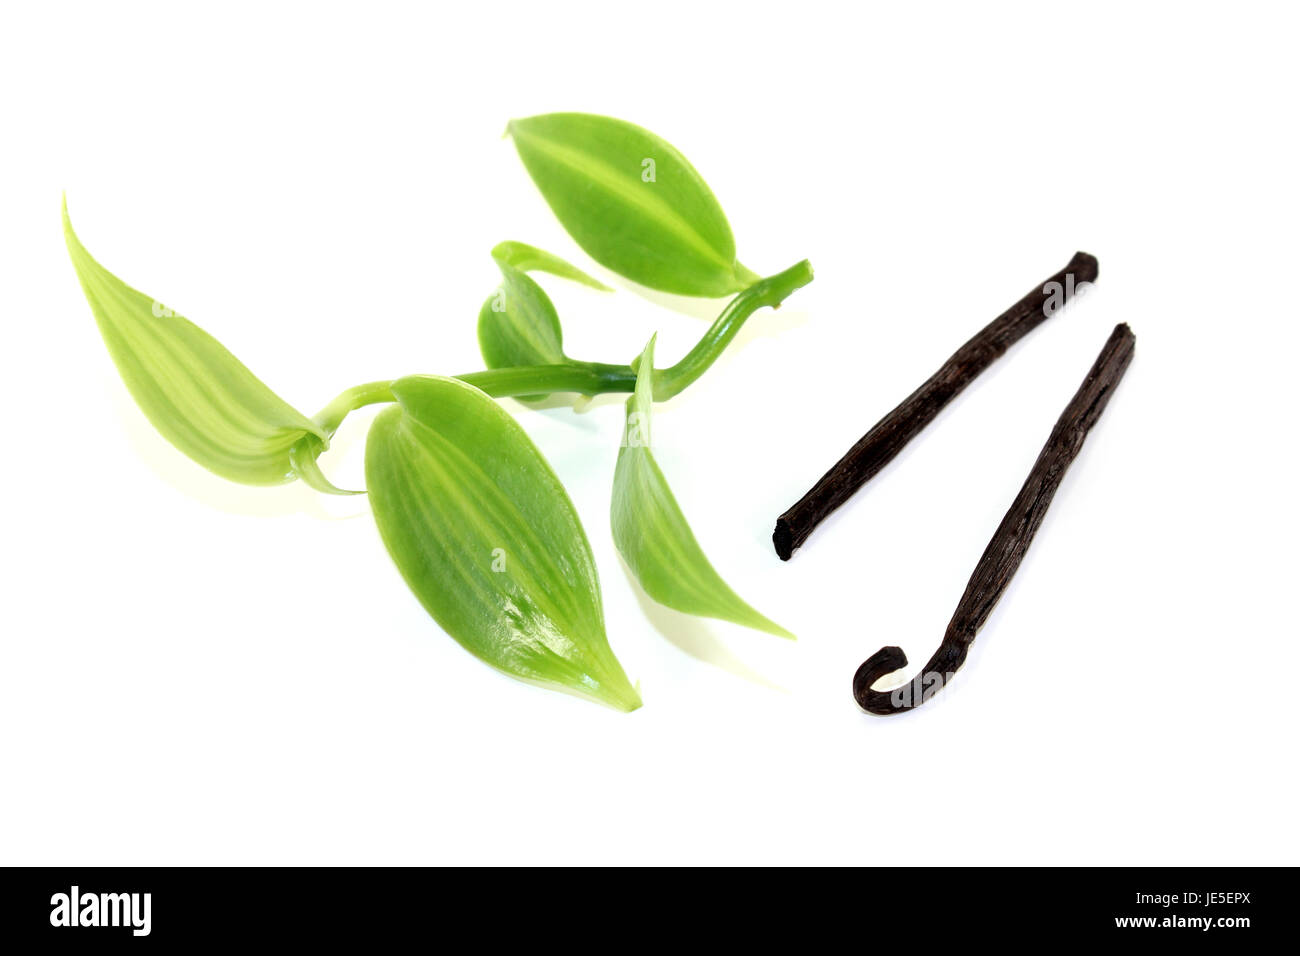 Frische grüne Vanilleblätter mit Vanillestangen auf hellem Hintergrund Foto Stock